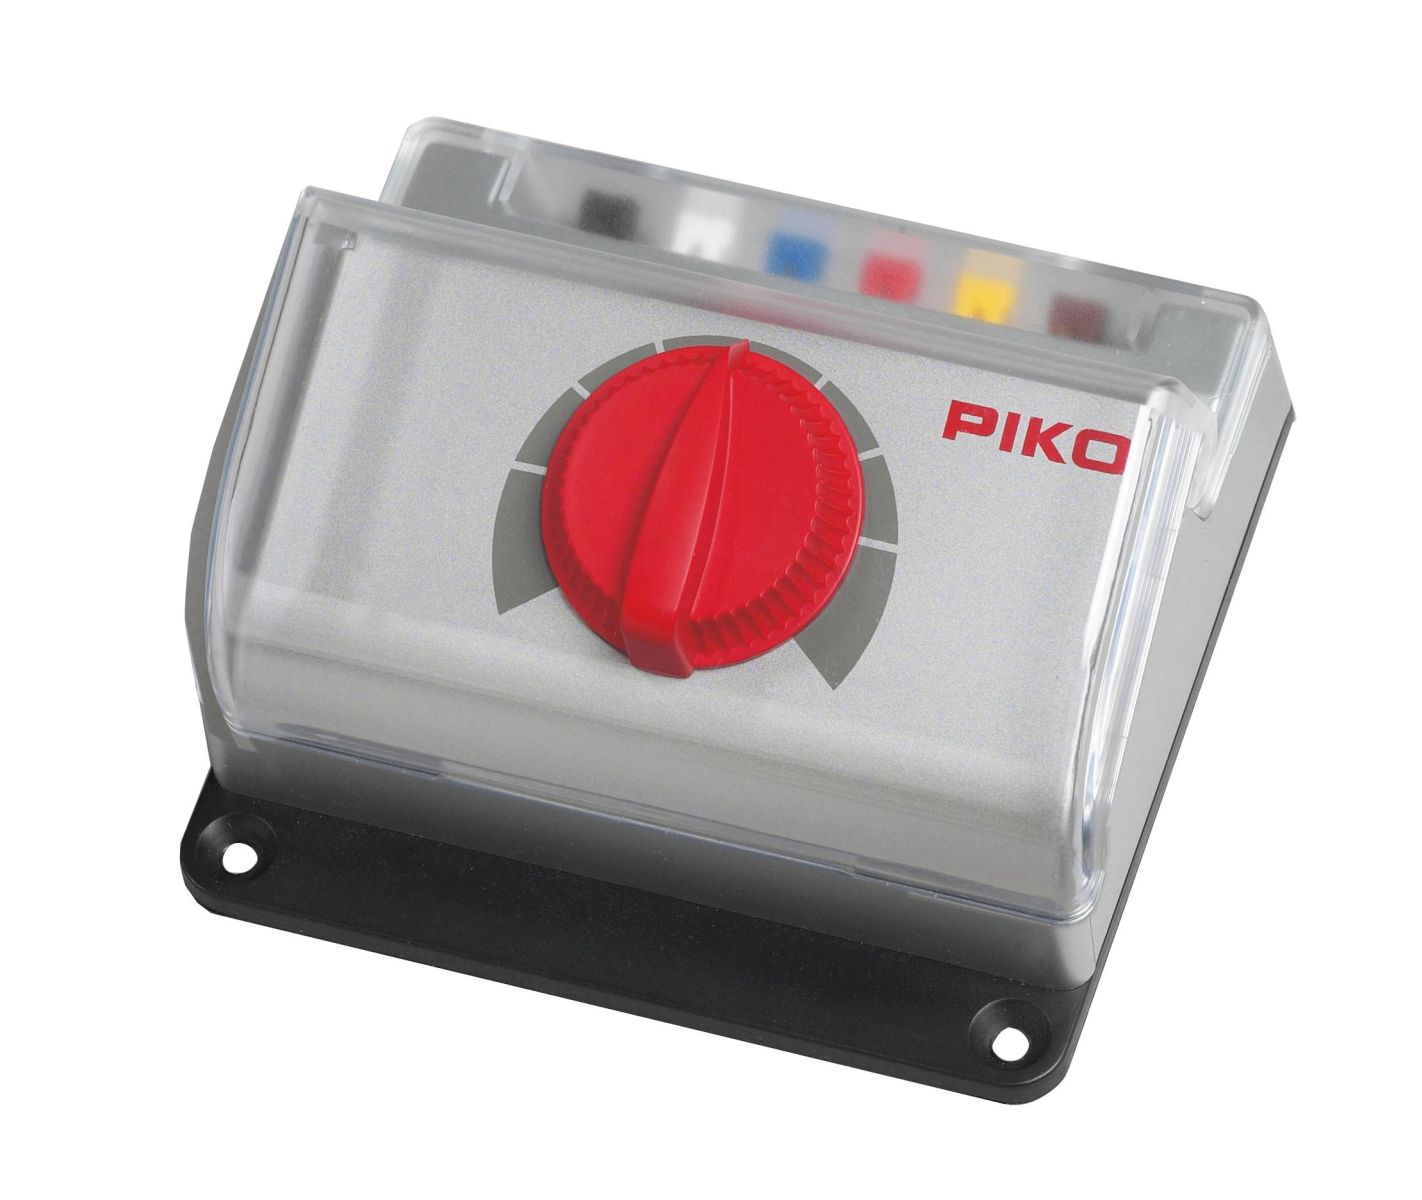 Piko 35006 - Fahrregler Basic für die Gartenbahn